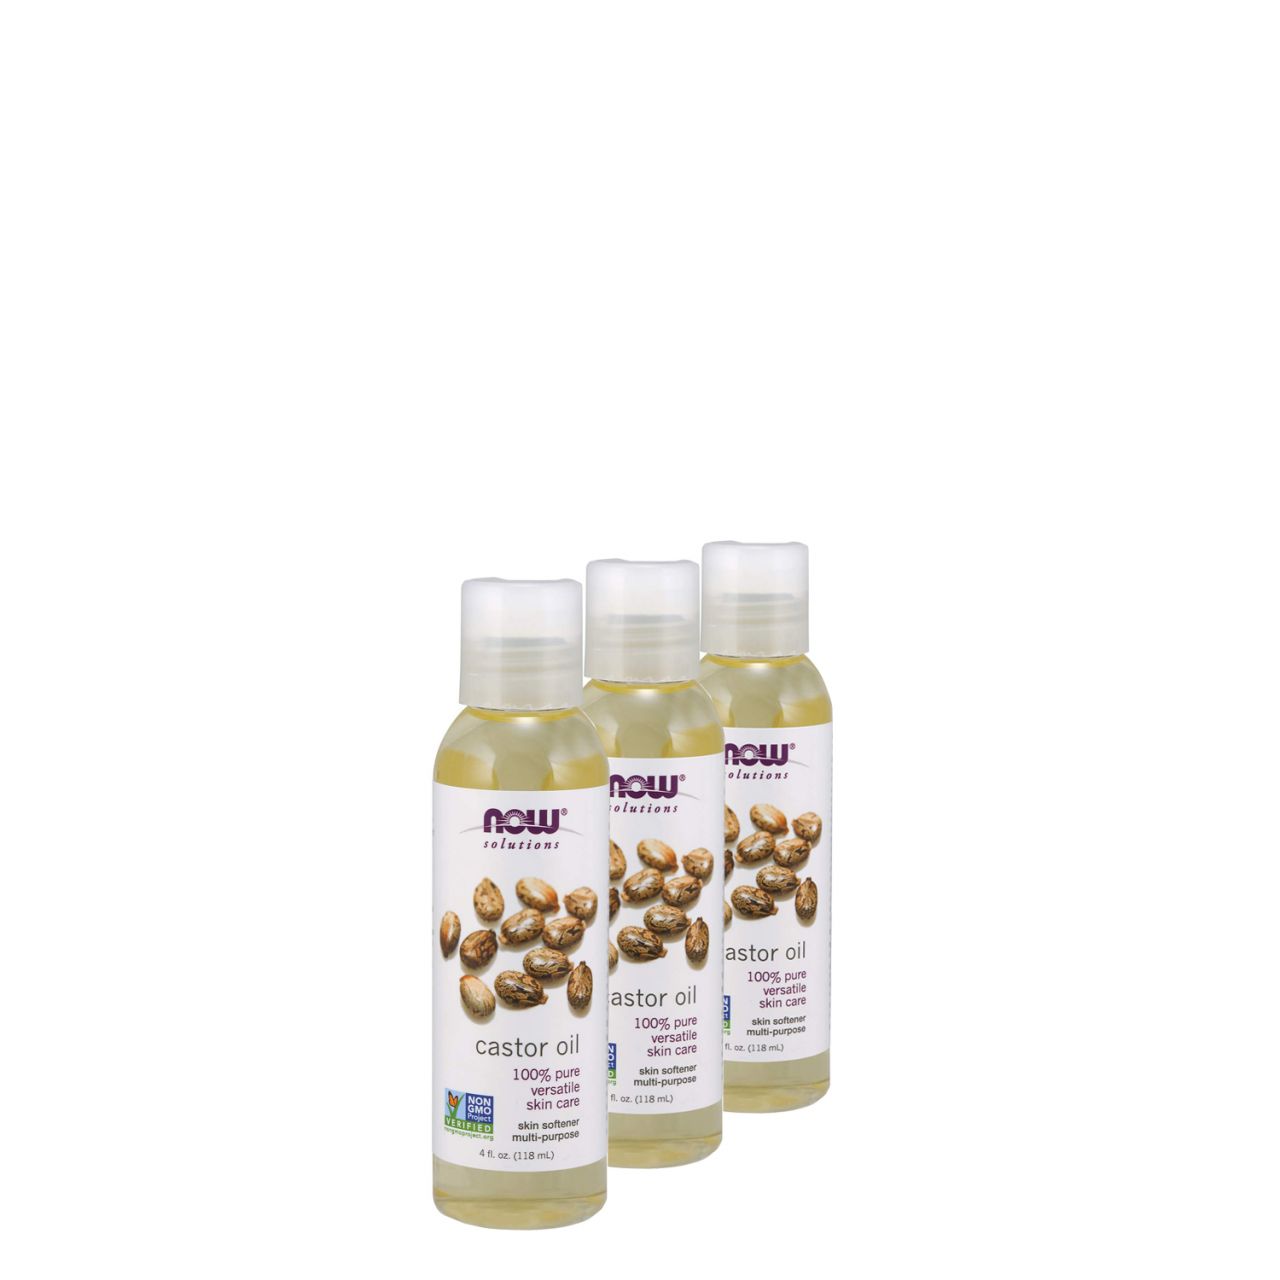 Bőr- és hajpuhító ricinusolaj, Now 100% Pure Castor Oil, 3x118 ml